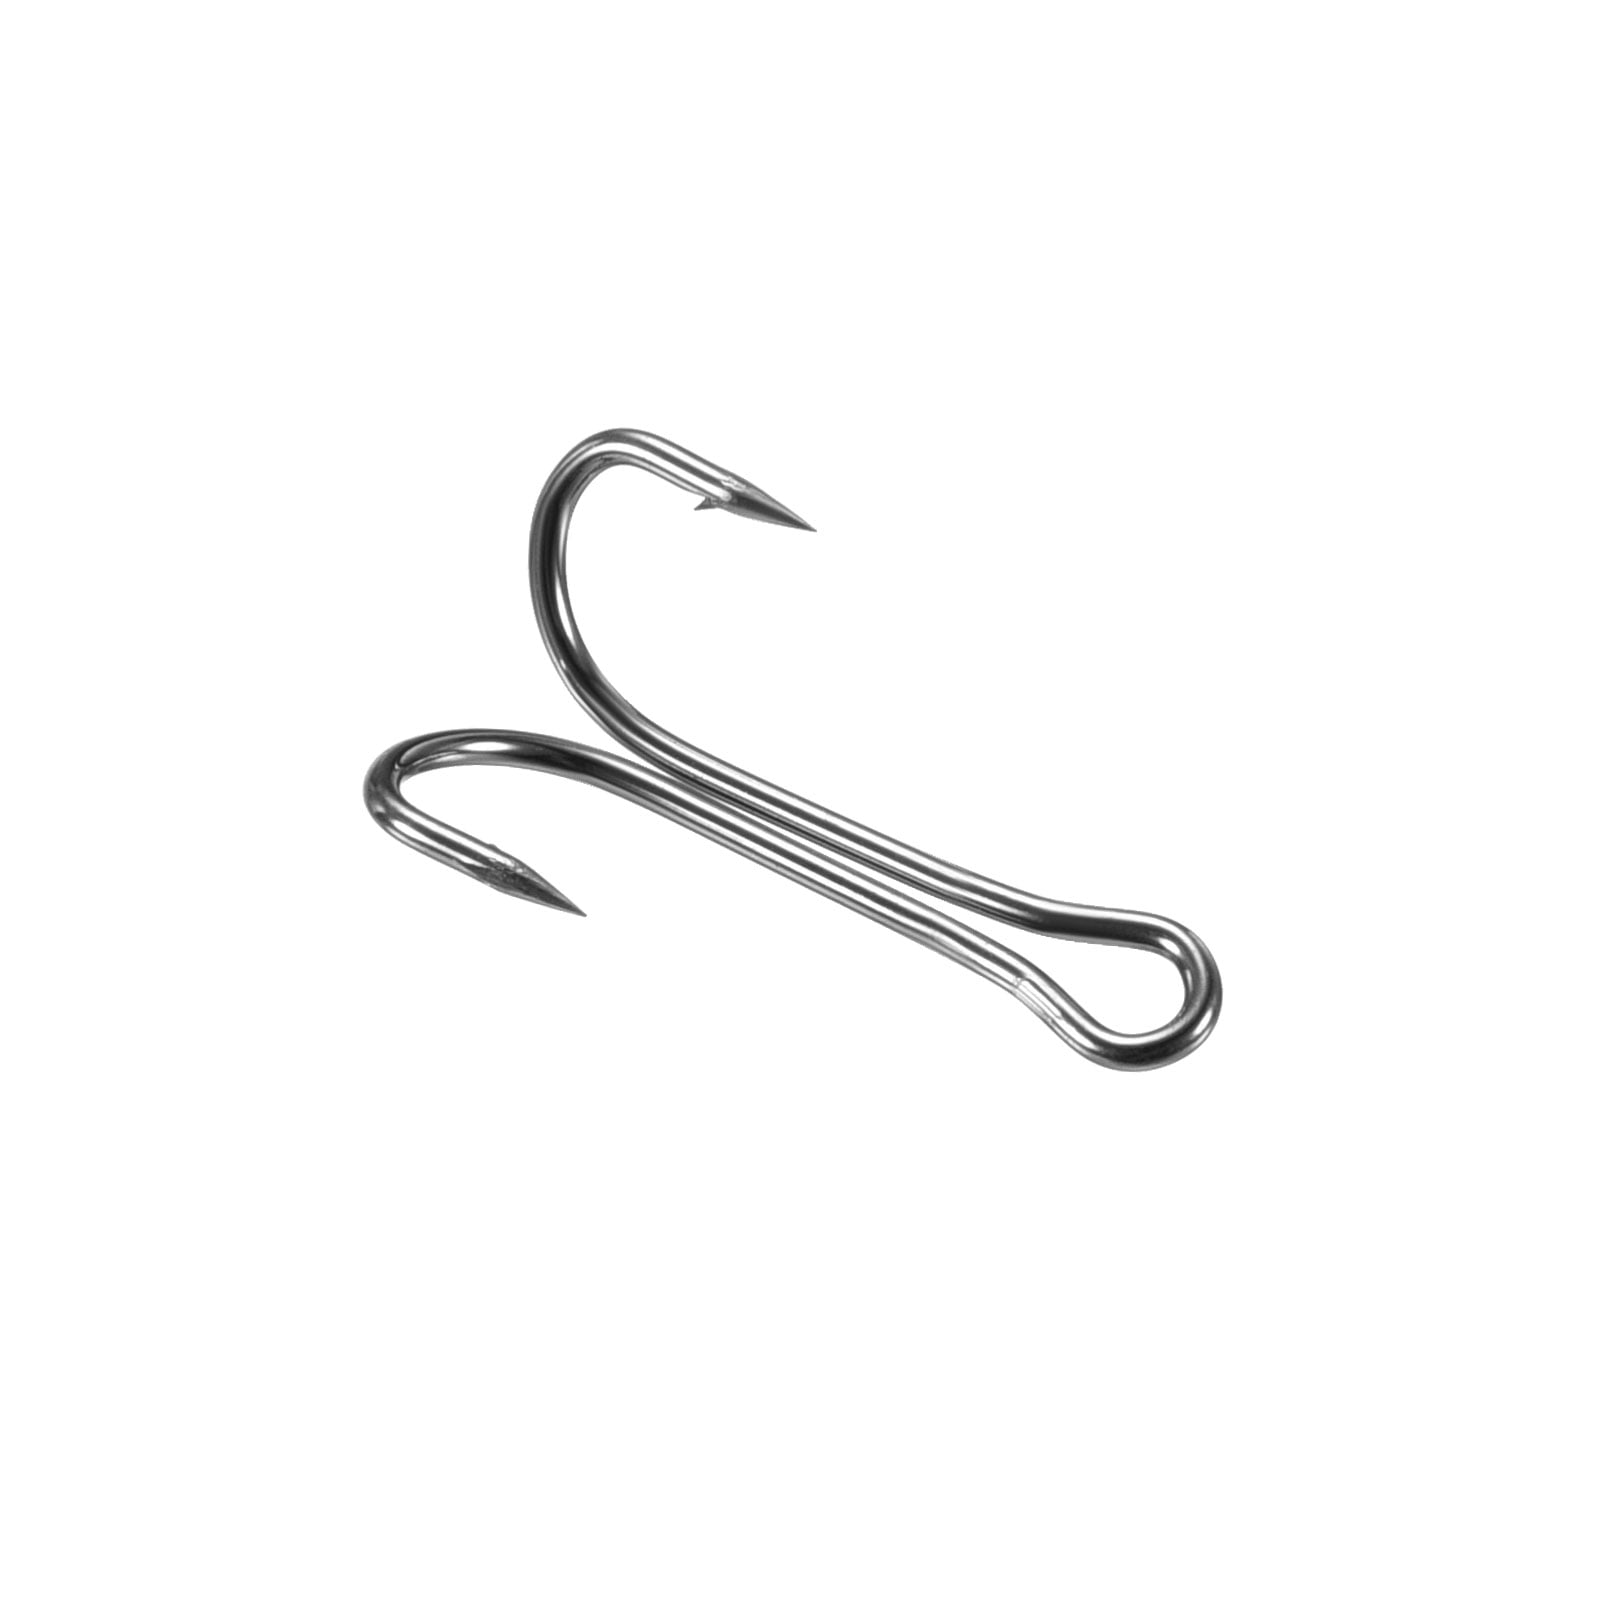 8# 0.71 Carbon Steel Double Fish Hooks Sharp Barbed Frog Hook, Black 20  Pack 